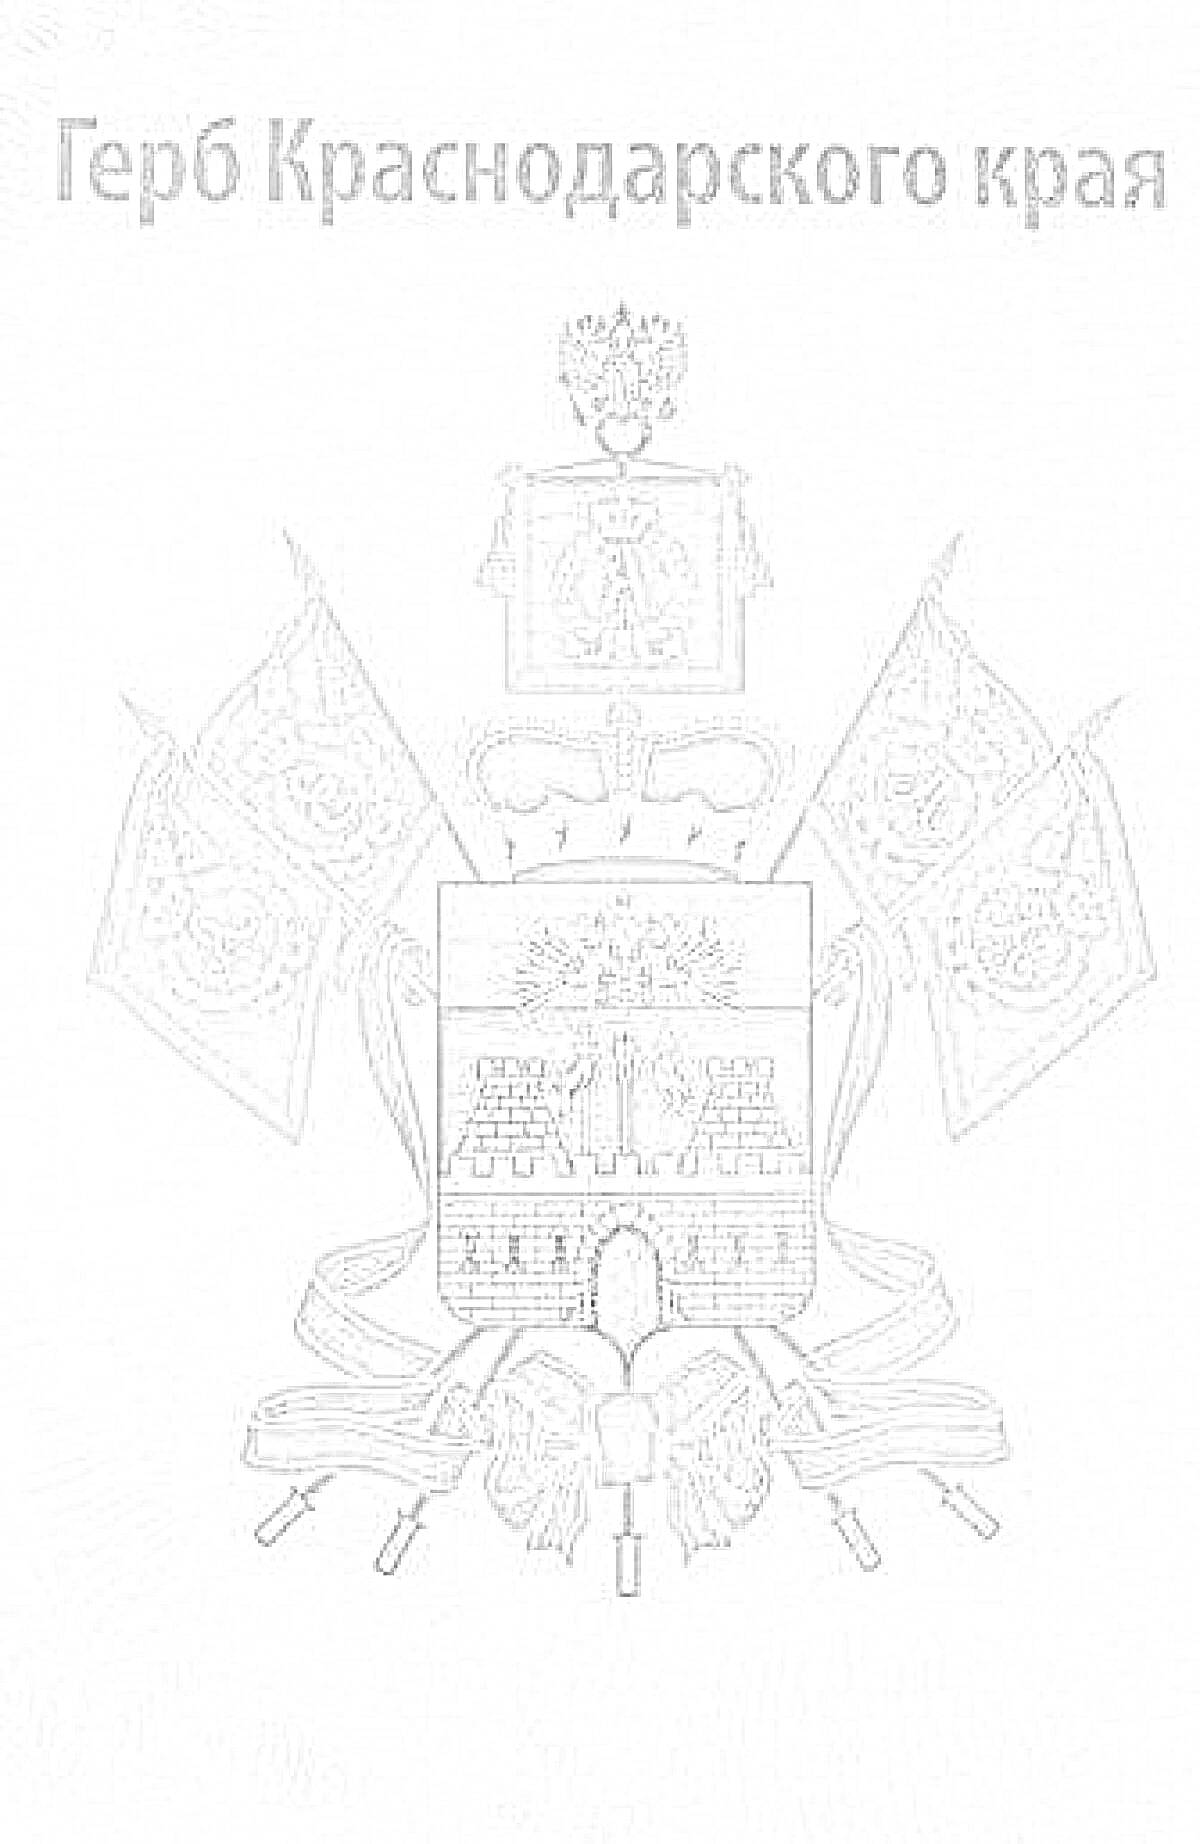 Герб Краснодарского края, изображение с крепостной стеной, крестом, знаменами, лентами и орлом